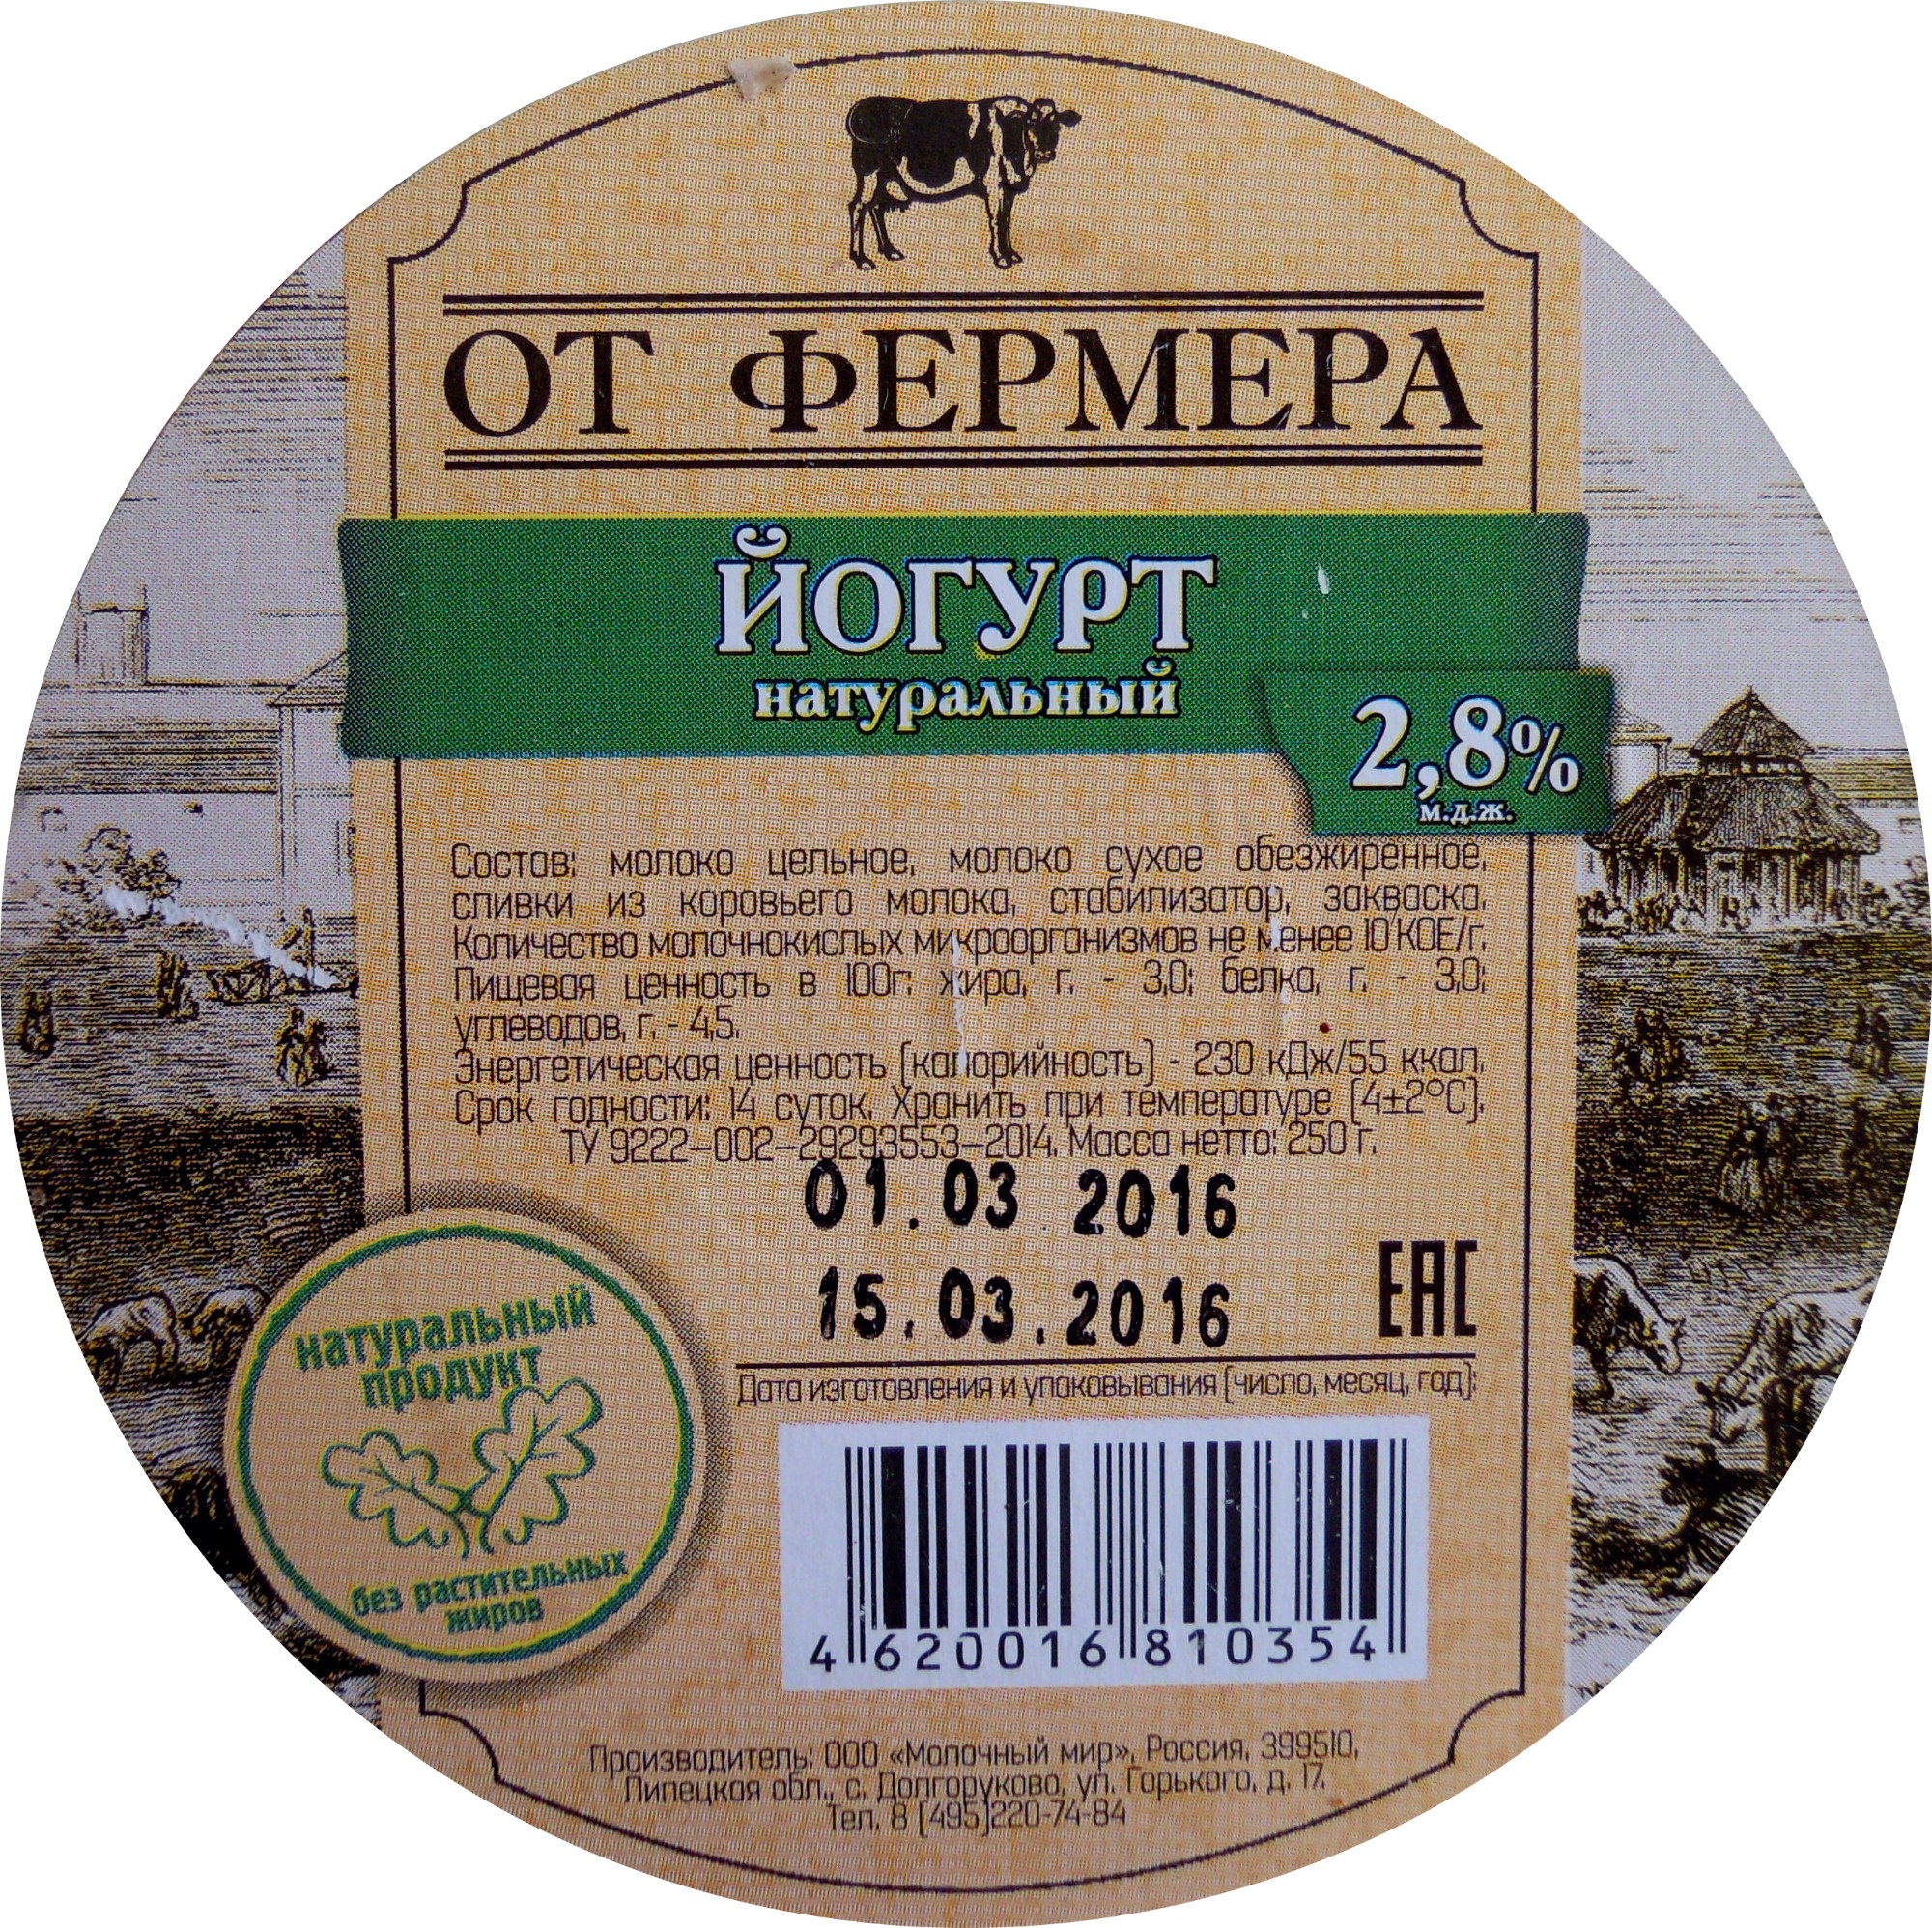 Йогурт натуральный 2,8% - Product - ru